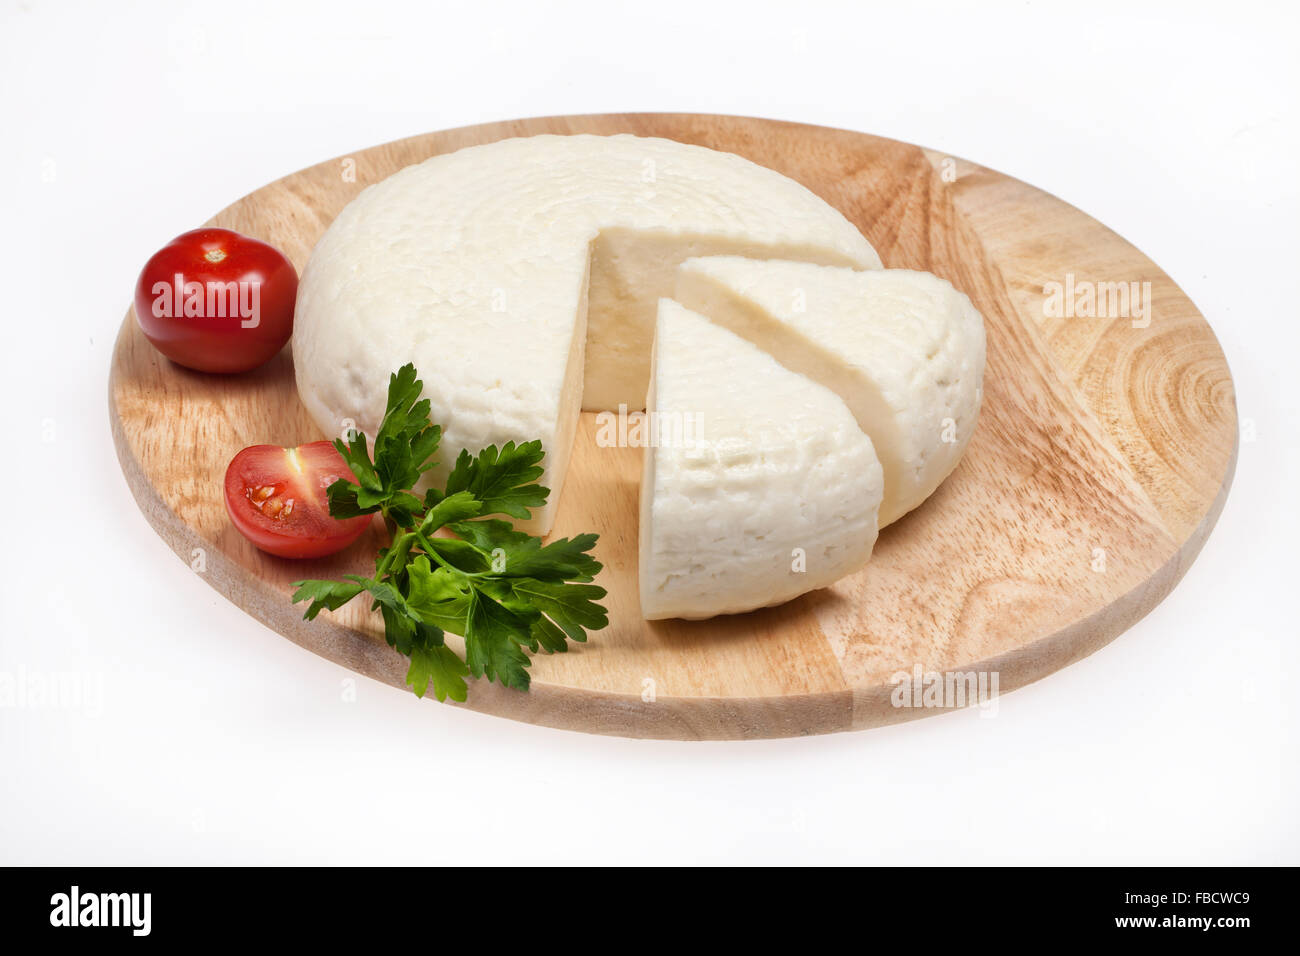 Cuisine Vaisselle fromage mangeable manger des aliments préparation du produit national géorgien caucase ingrédients légumes coupe pièce Banque D'Images